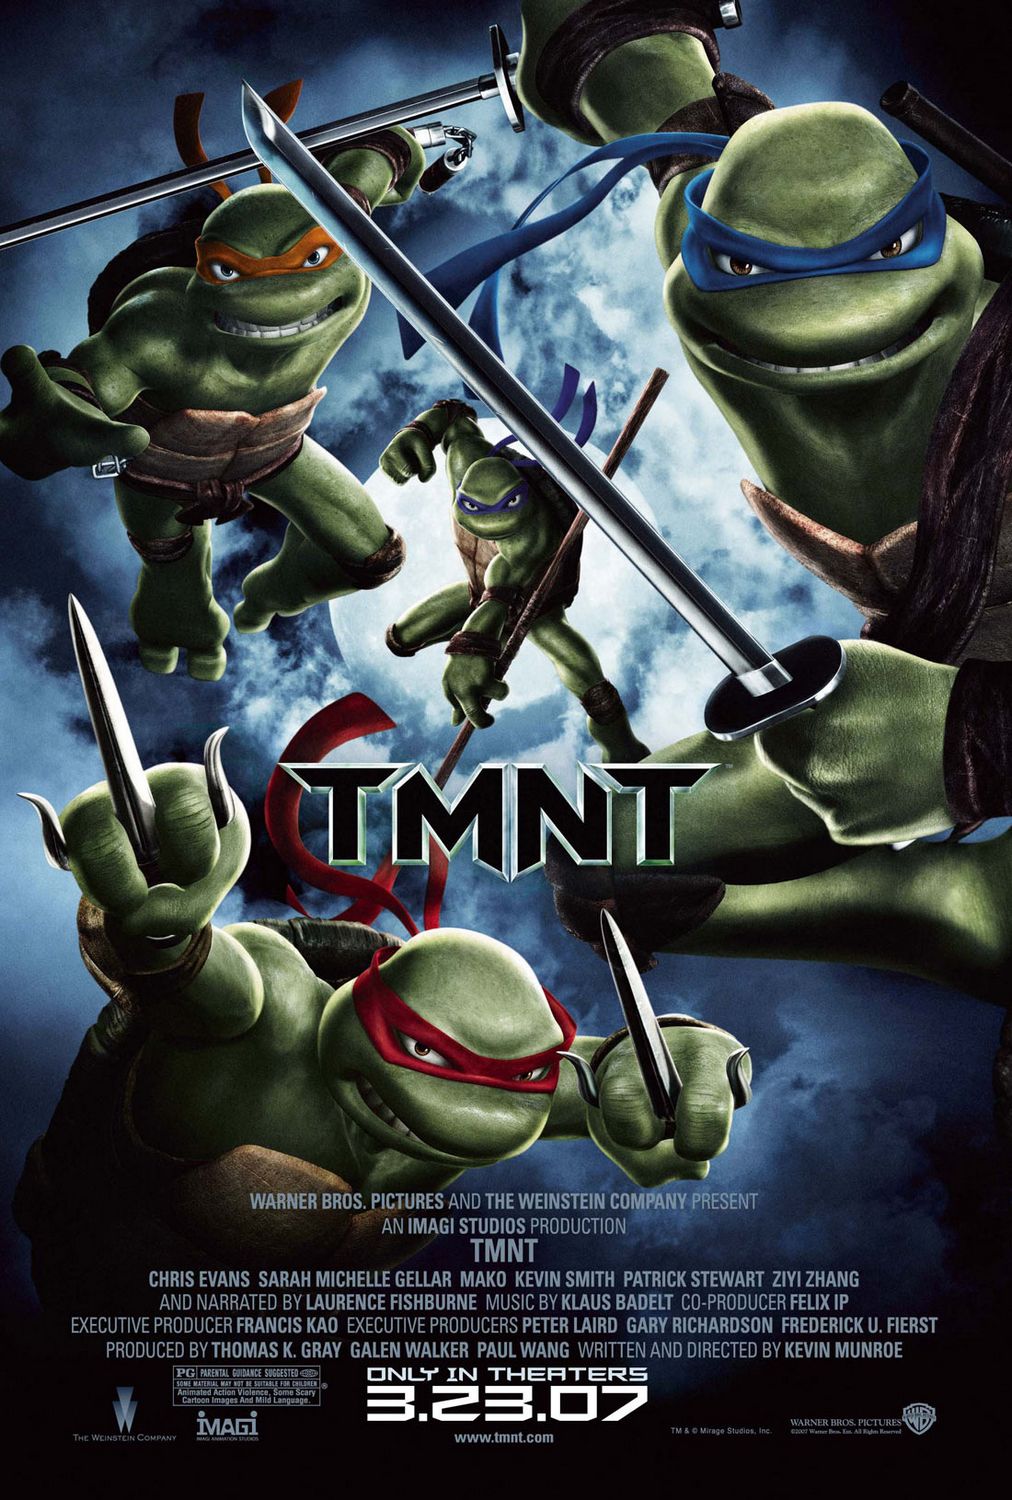 Extra Large Movie Poster Image for Teenage Mutant Ninja Turtles (#5 of 16)